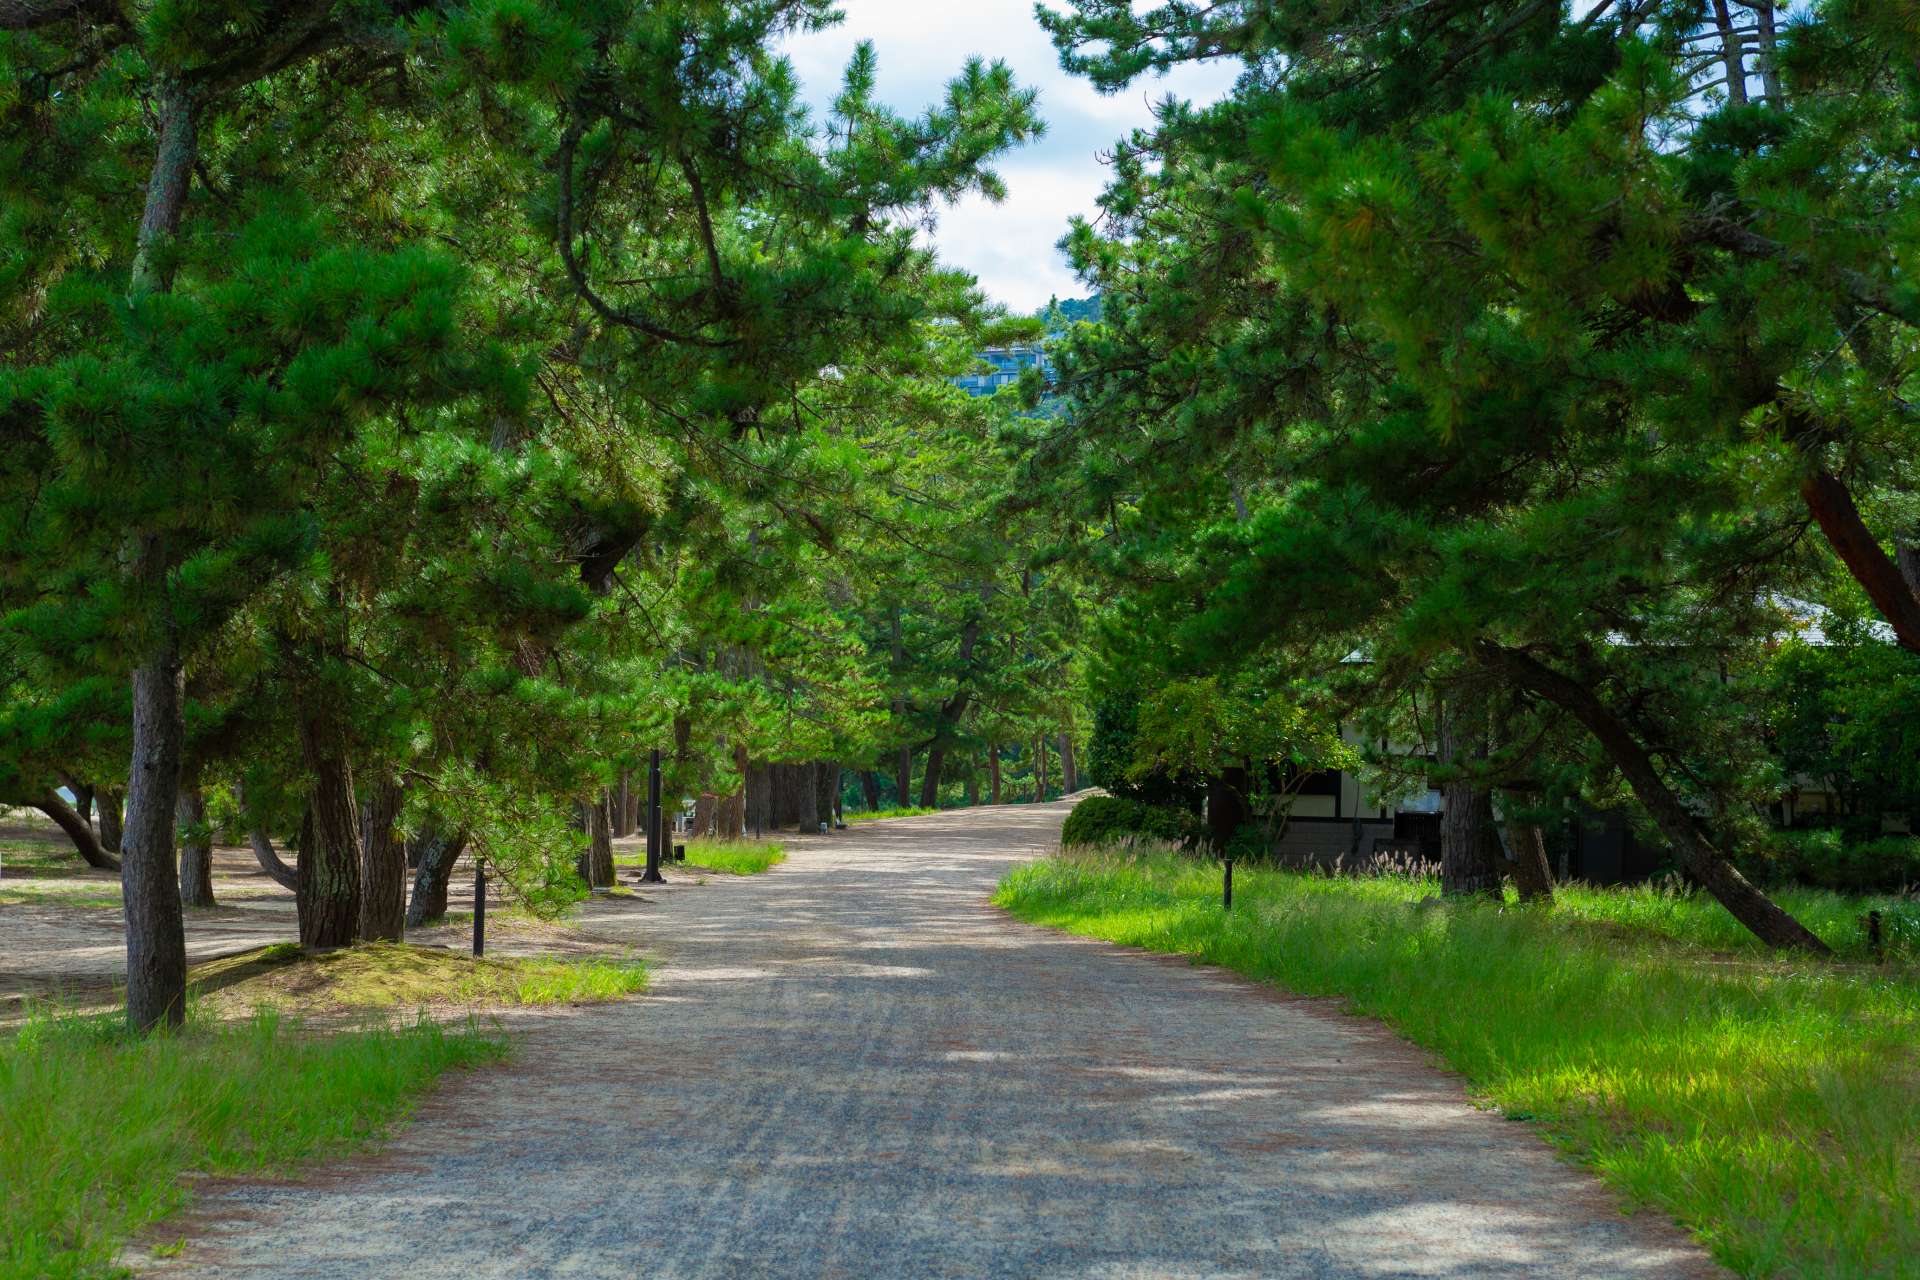 El camino en Amanohashidate. Tan refrescante caminar entre pinos.